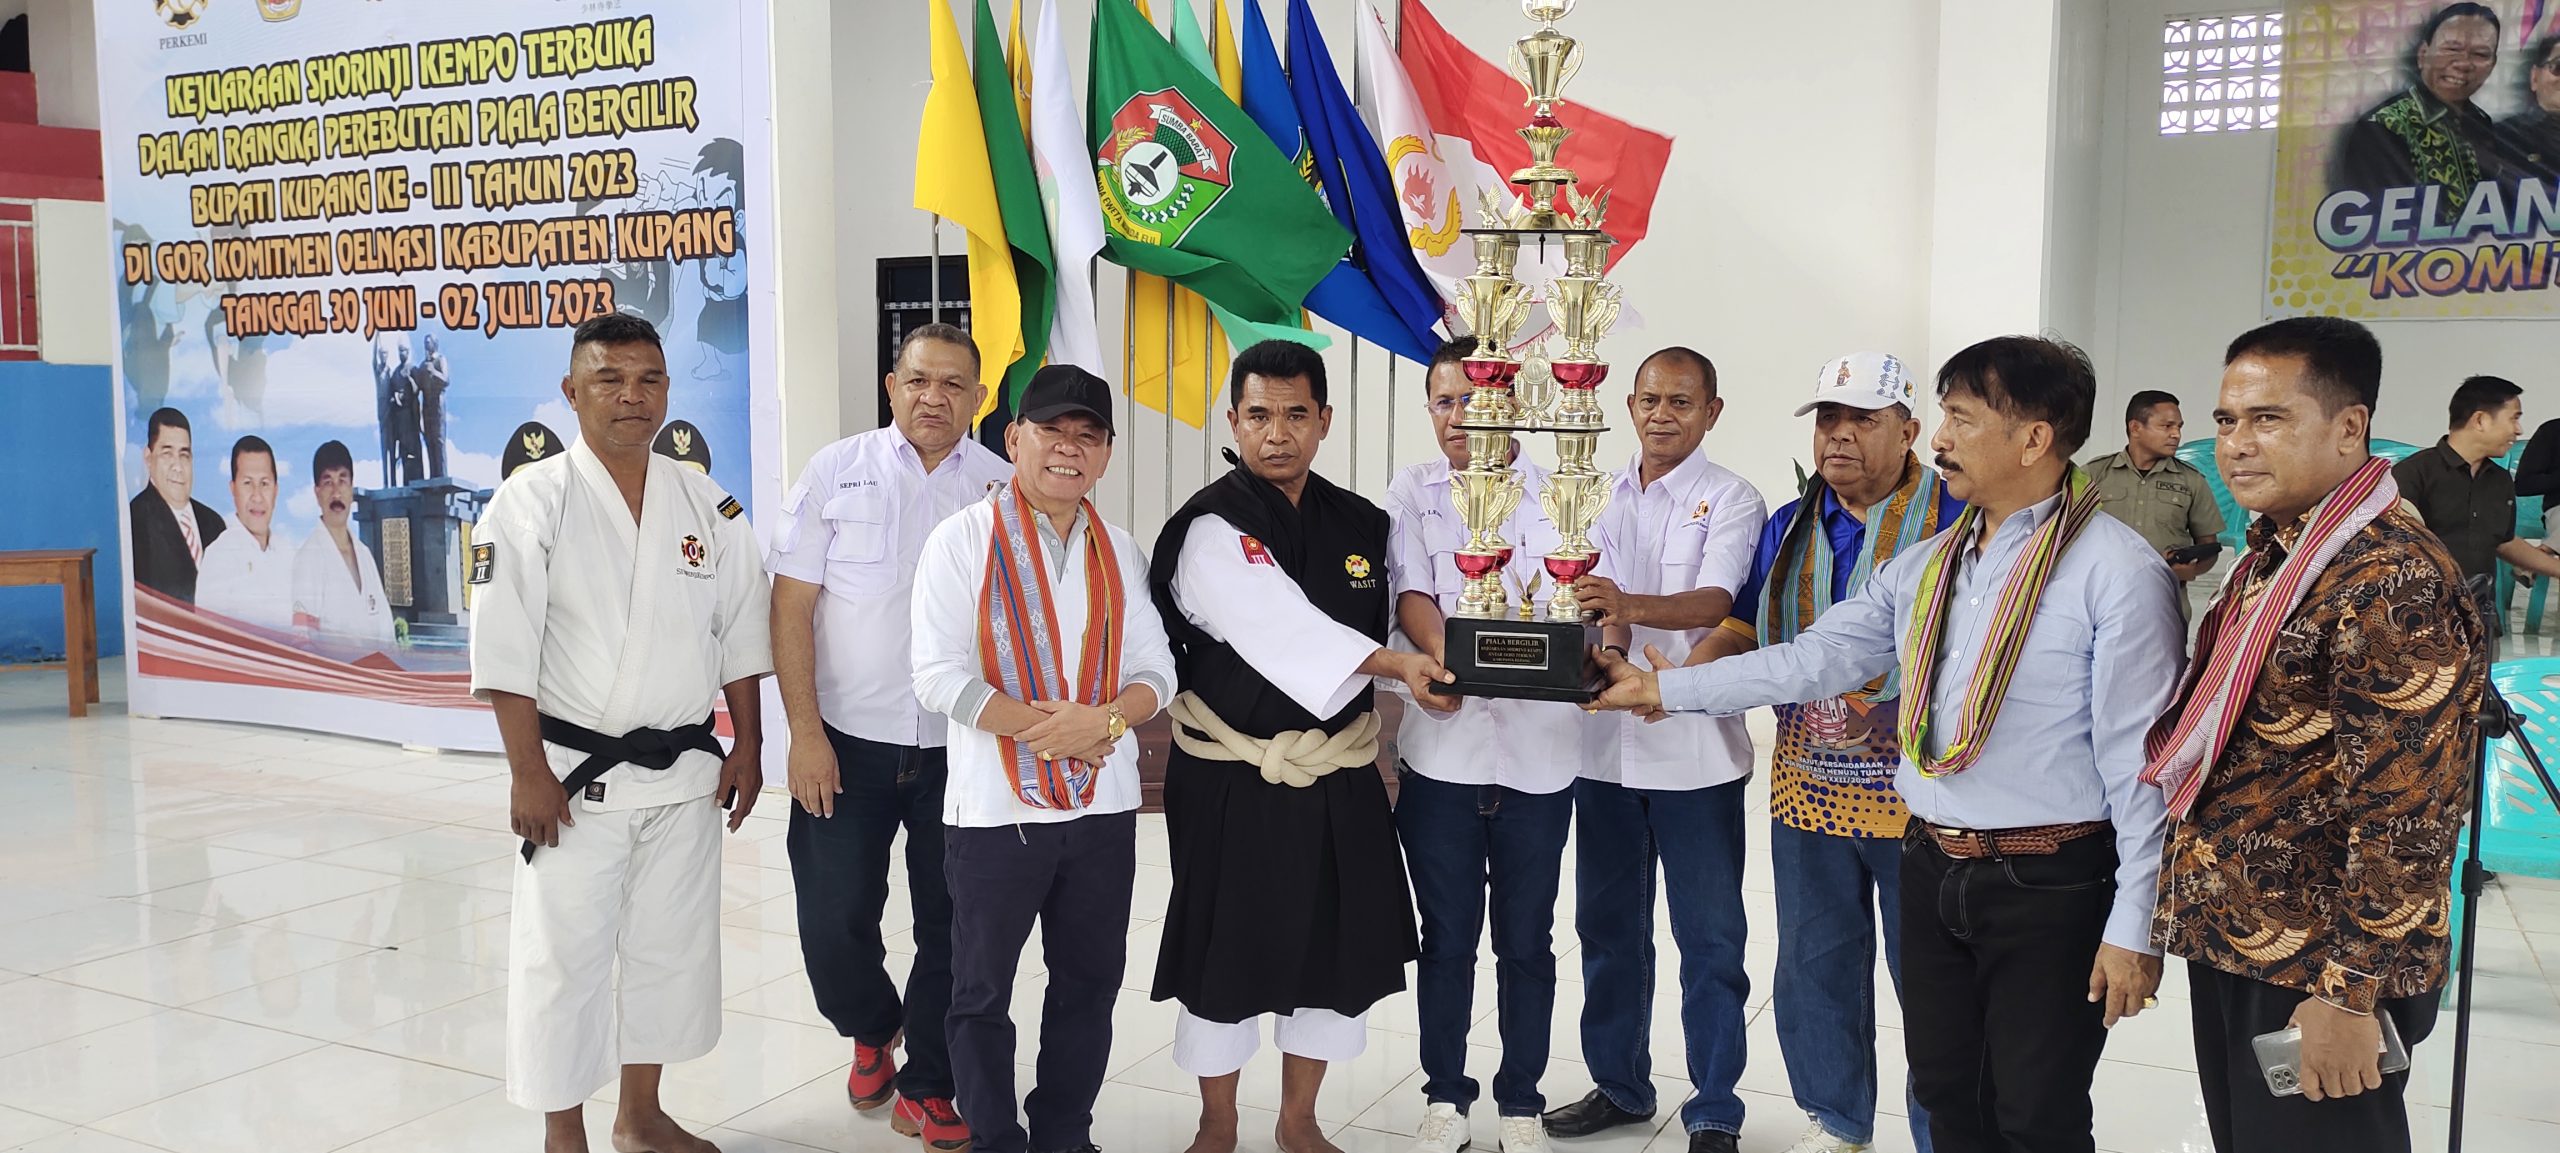 Foto. Perdana di Kabupaten Kupang, GOR Komitmen Resmi Digunakan Event Kempo Bupati Cup III.